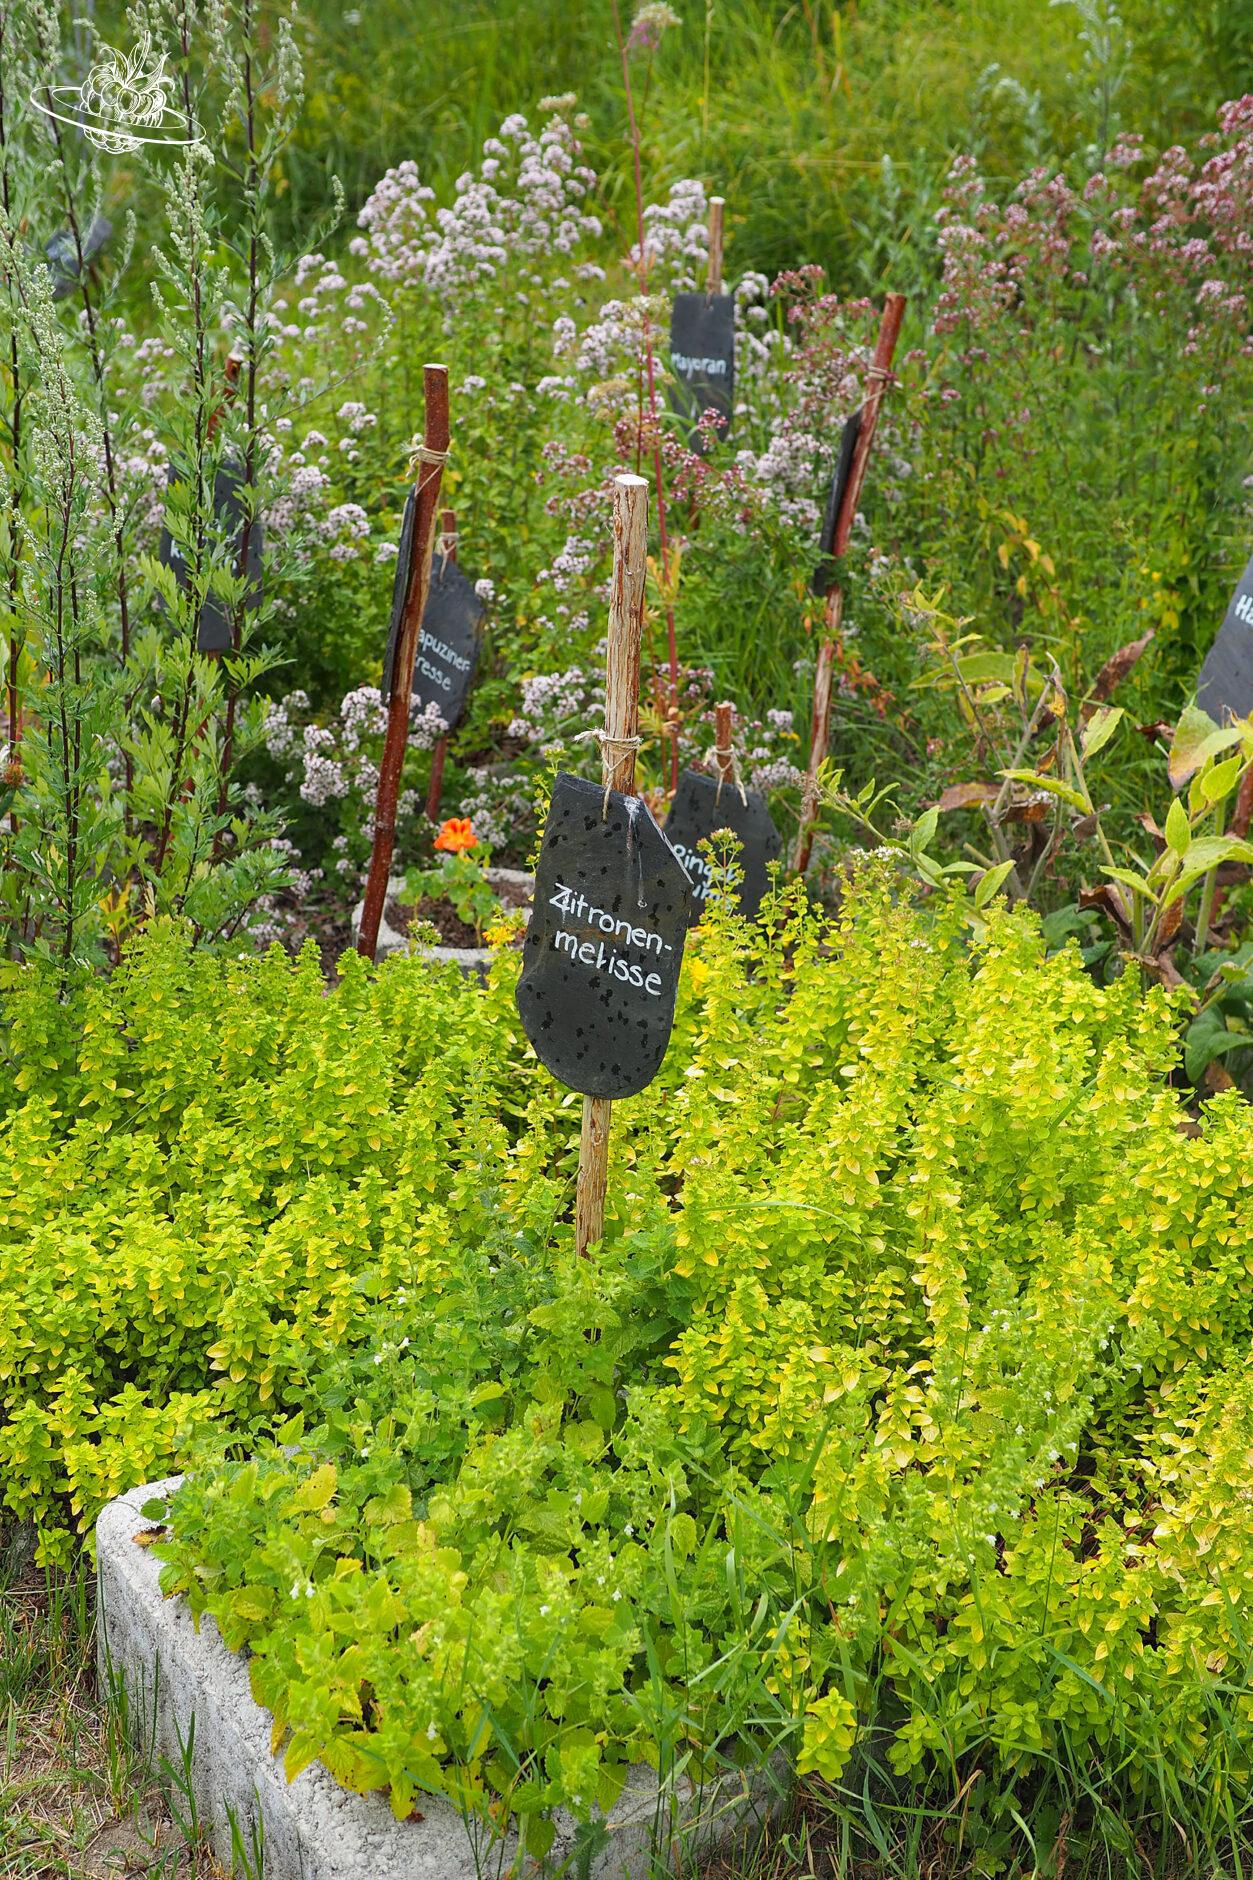 Kräutergarten mit kleinen, beschrifteten Schiefertafeln